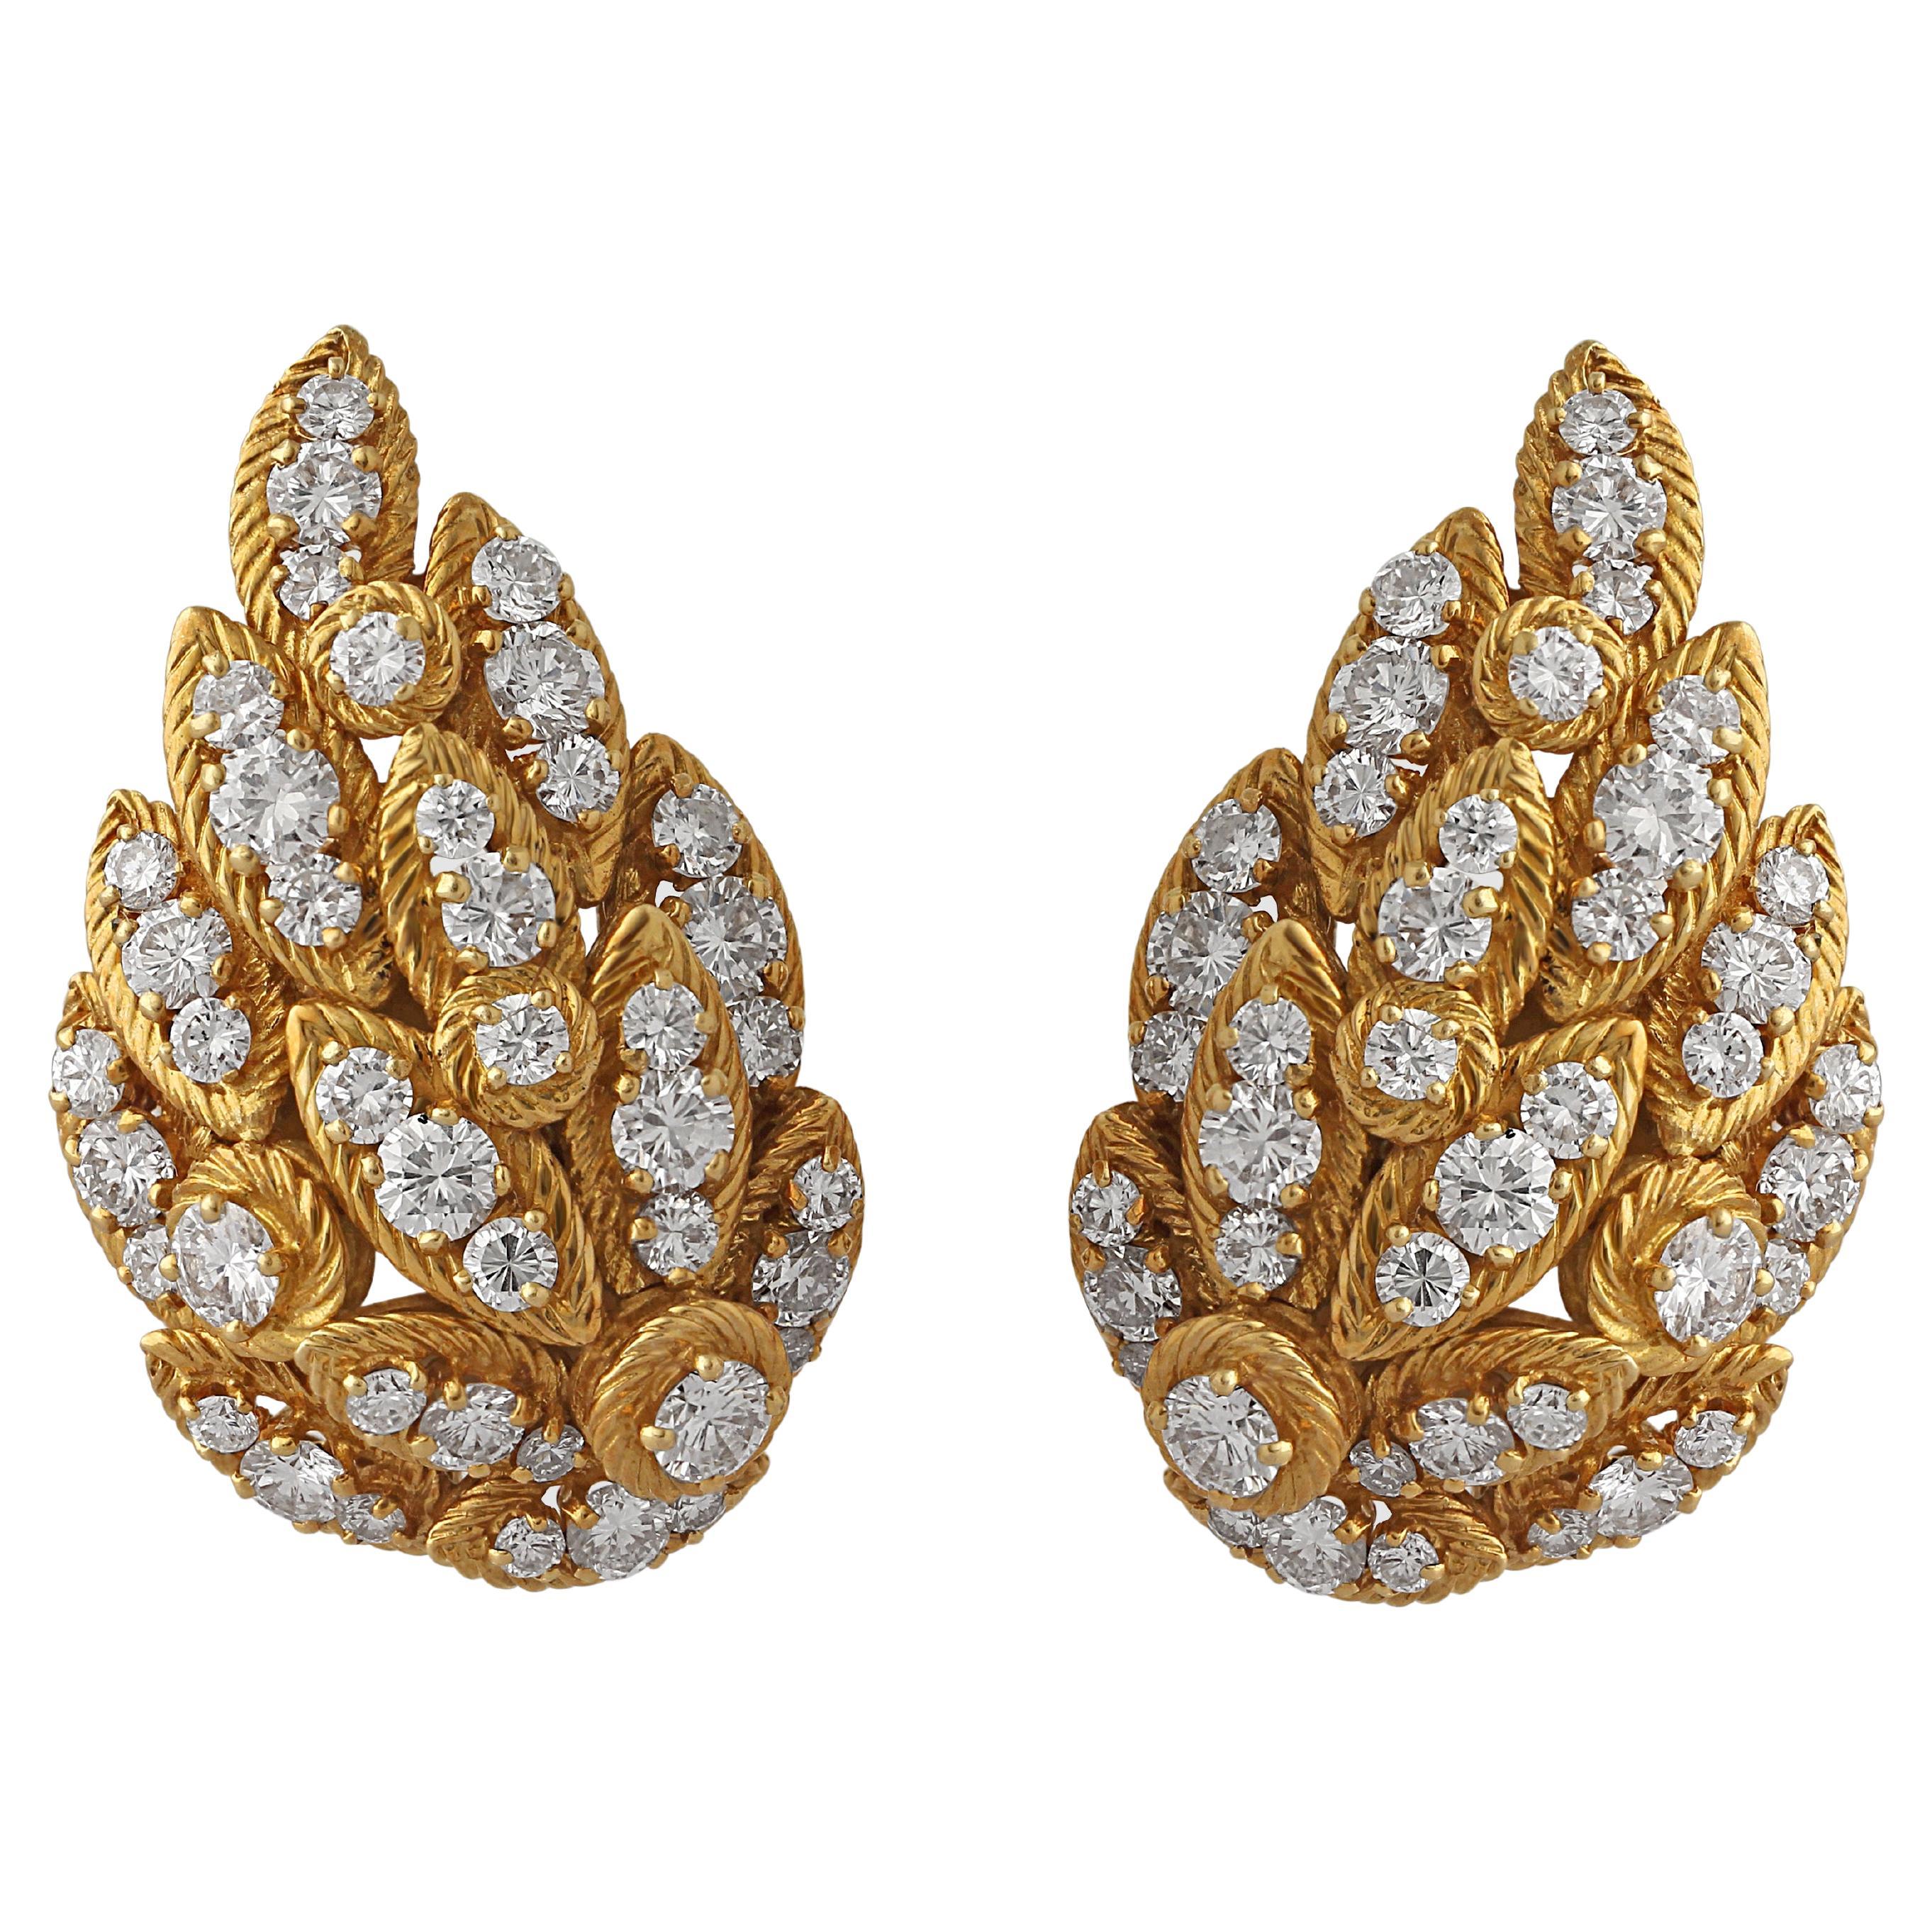 Georges Lenfant for Van Cleef & Arpels Gold & Diamond Earrings